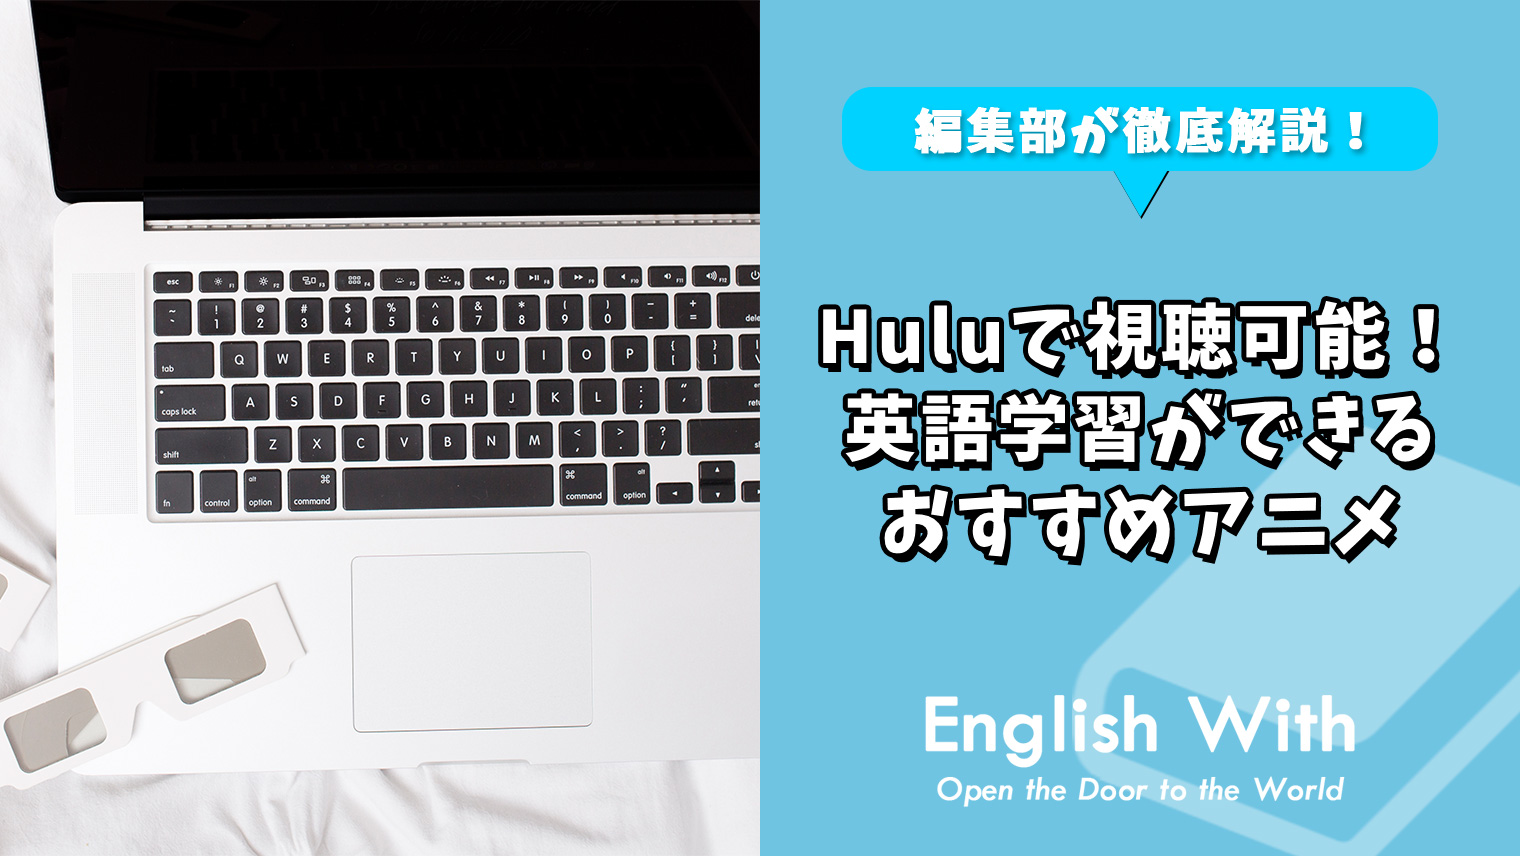 Huluで視聴可能 英語学習ができるおすすめアニメ 10選 英語学習メディアenglish With